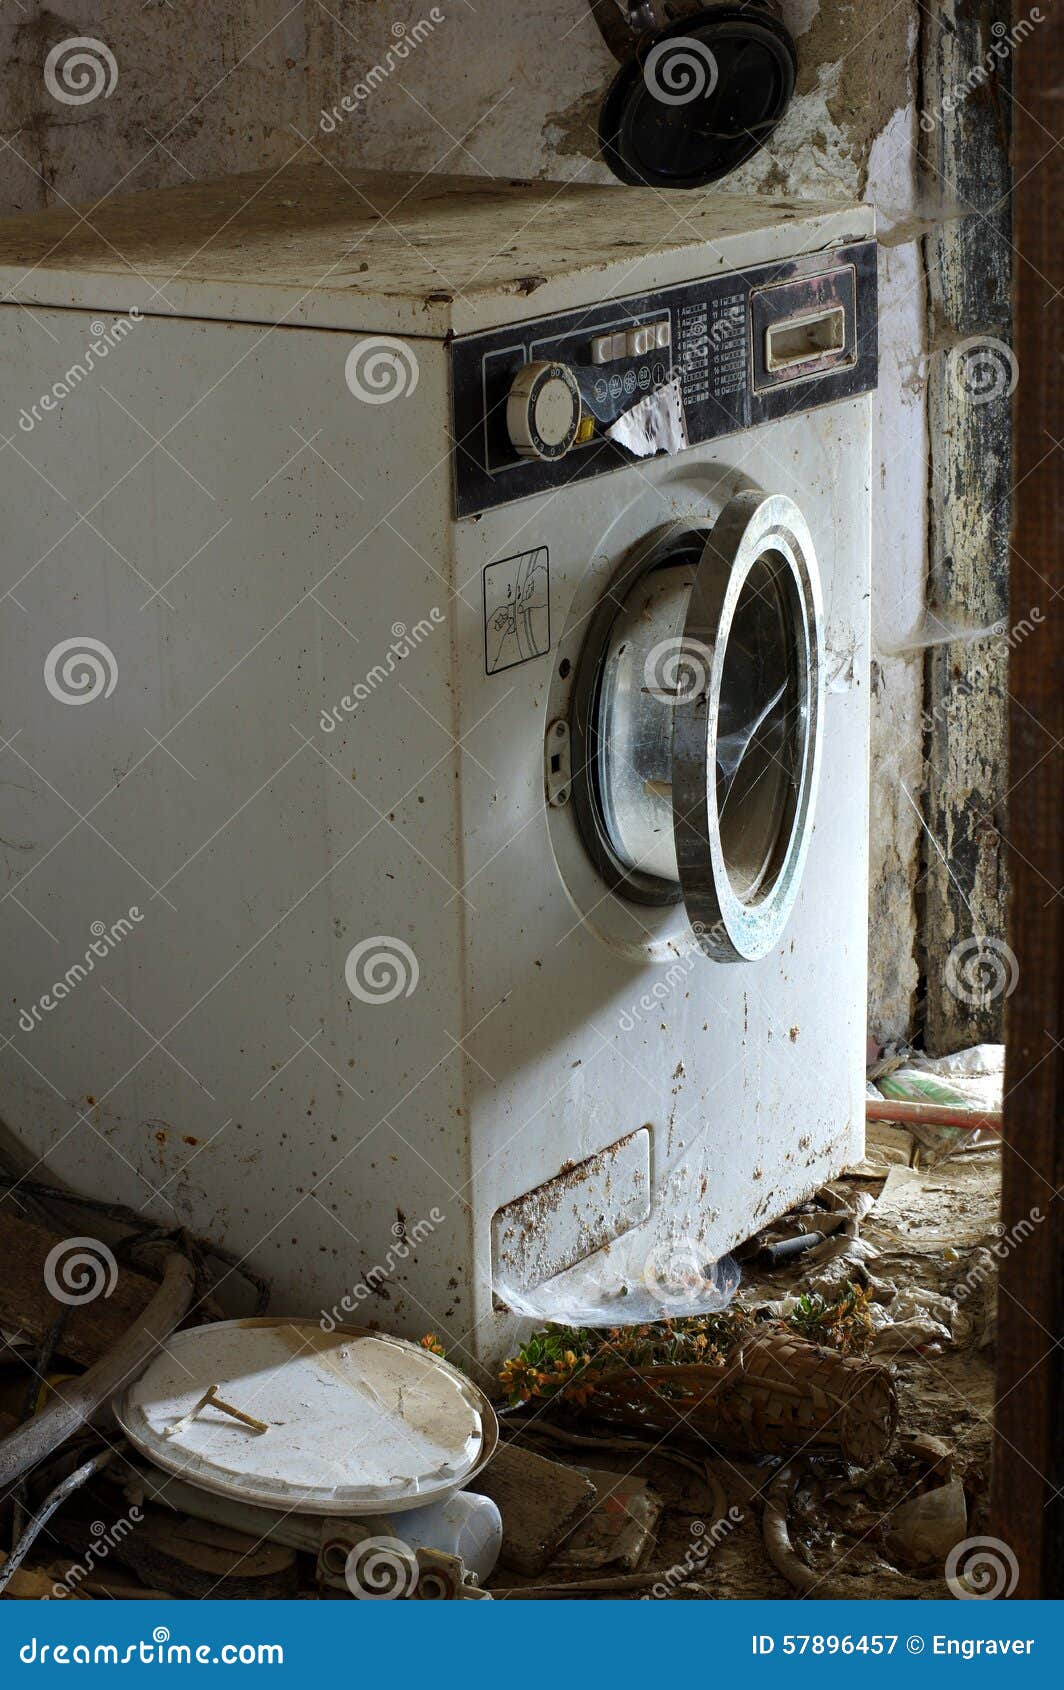 Сломанная стиральная машина. Поломанная стиральная машинка. Старая стиральная машина. Старая сломанная стиральная машина.